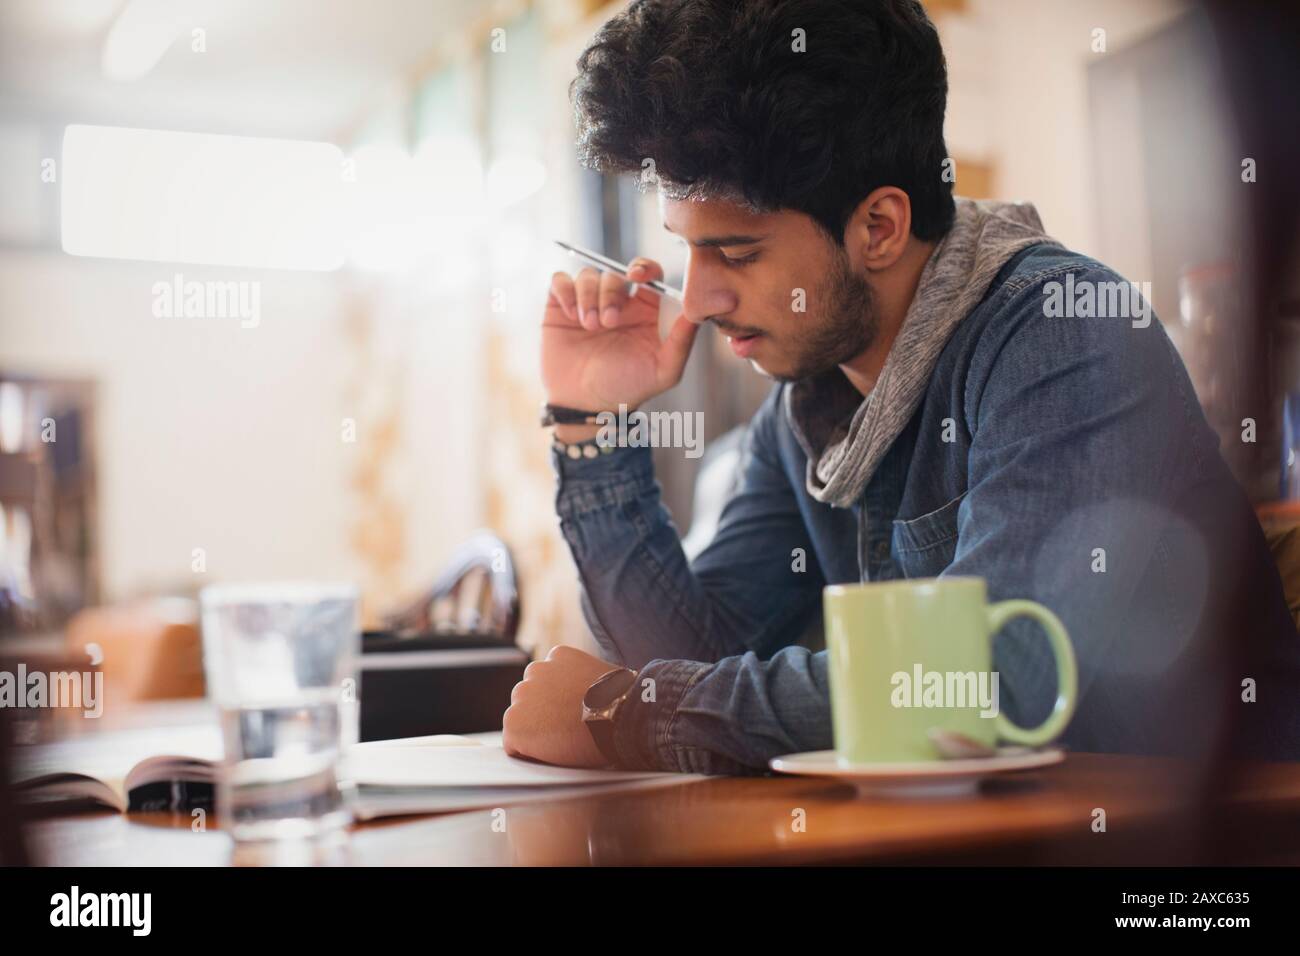 Jeune étudiant de l'université de sexe masculin concentré étudiant dans un café Banque D'Images